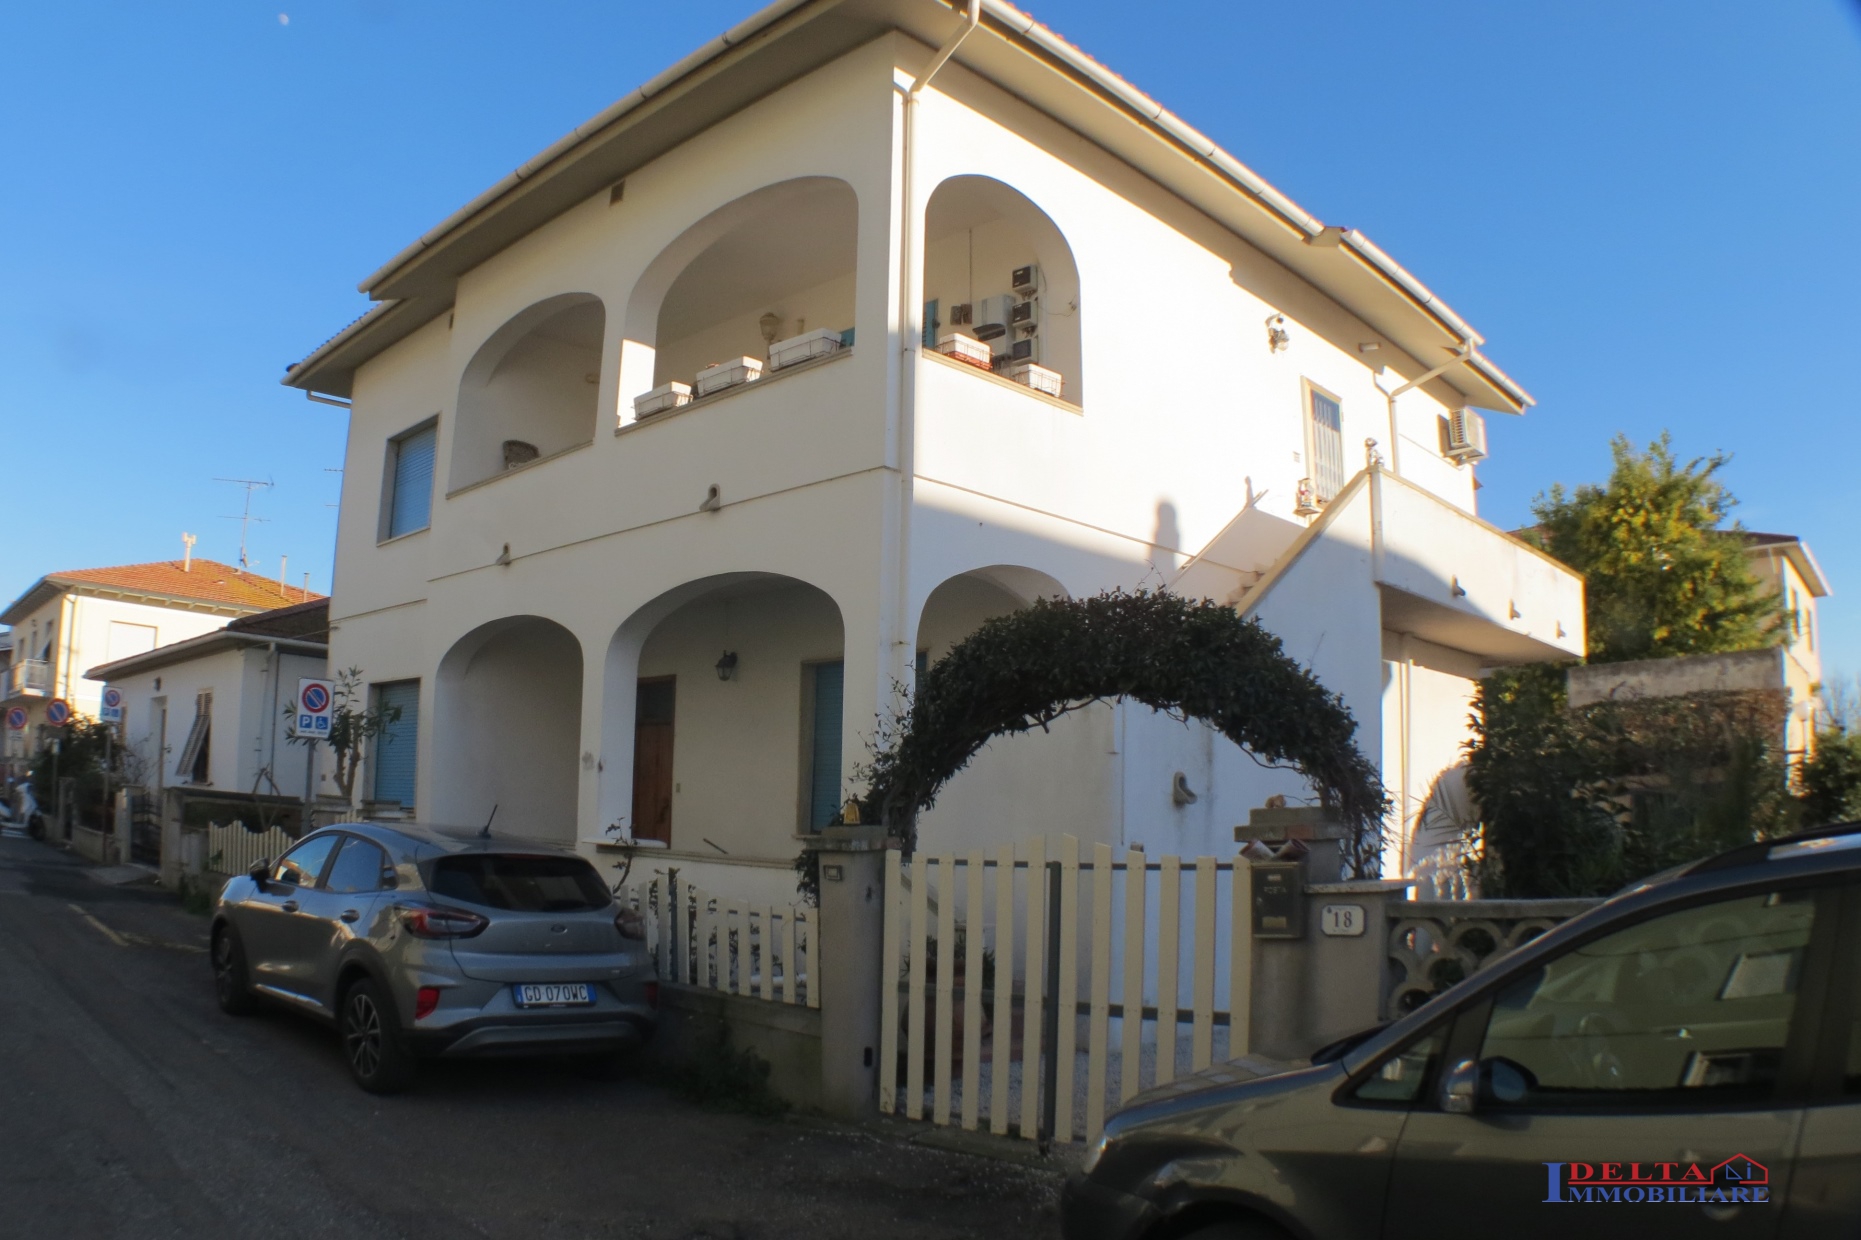 Casa indipendente in vendita, Rosignano Marittimo vada